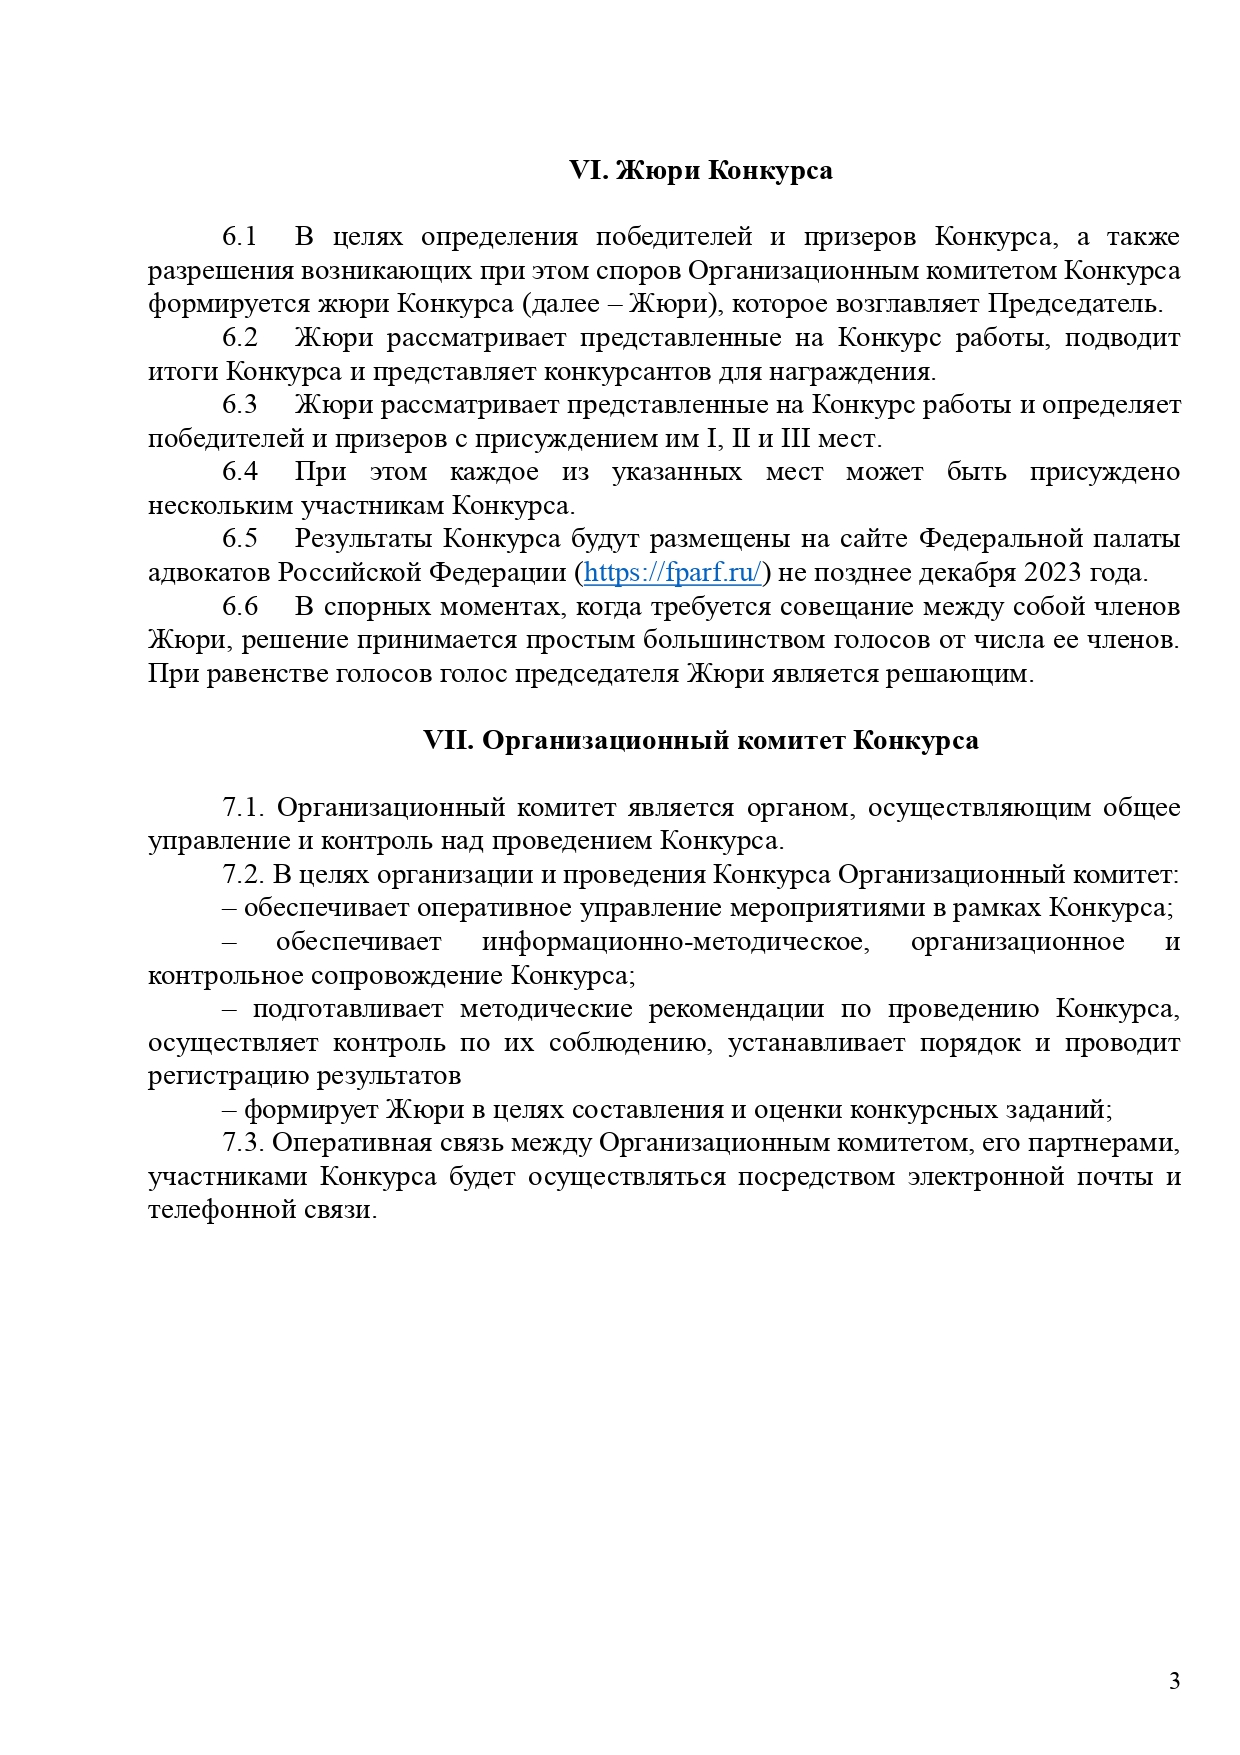 Polozhenie o Vserossijskom konkurse sredi advokatov - Advokatskie istorii_page-0003.jpg